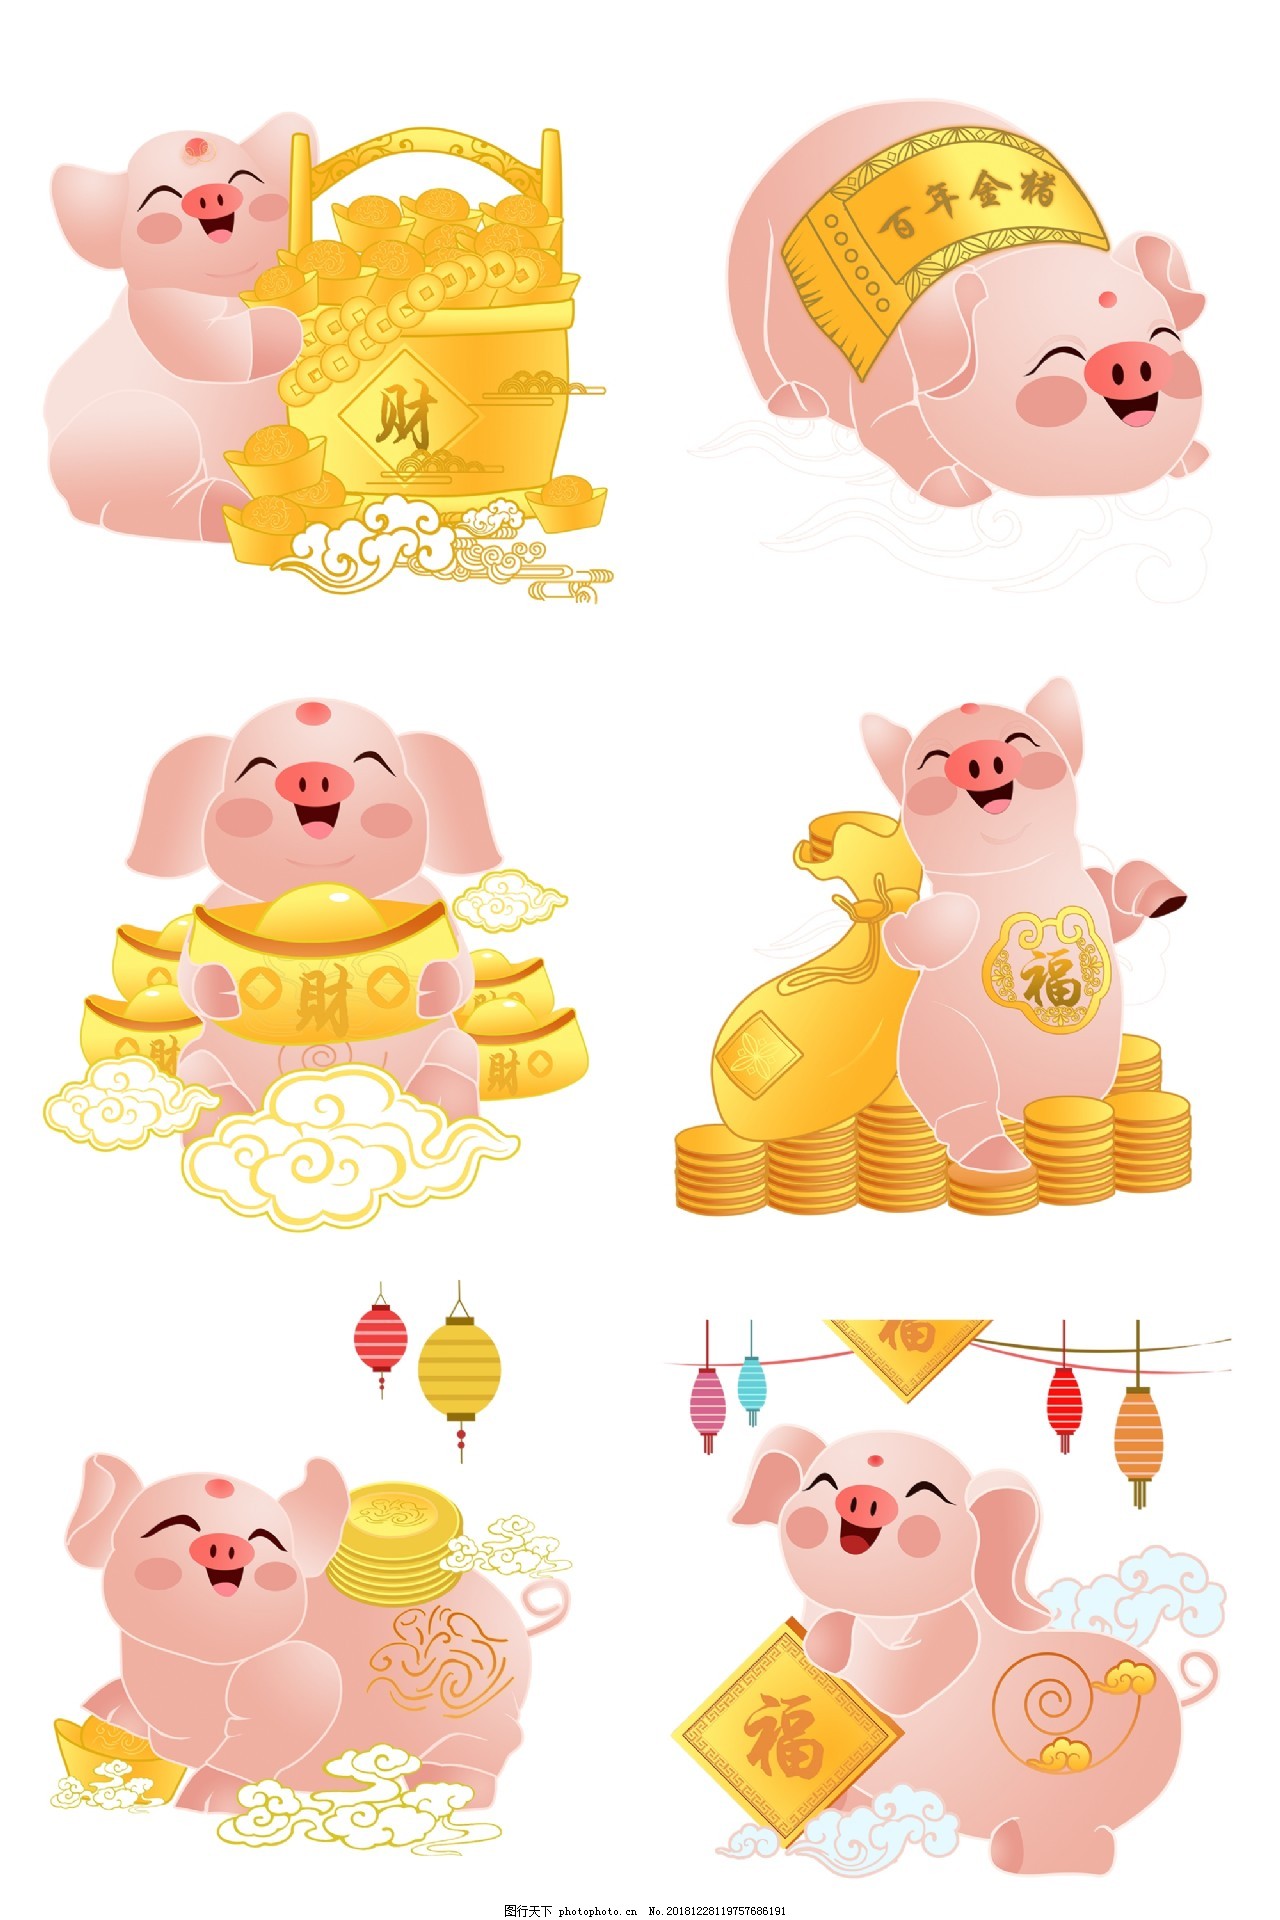 粉红猪 头像 - 堆糖，美图壁纸兴趣社区